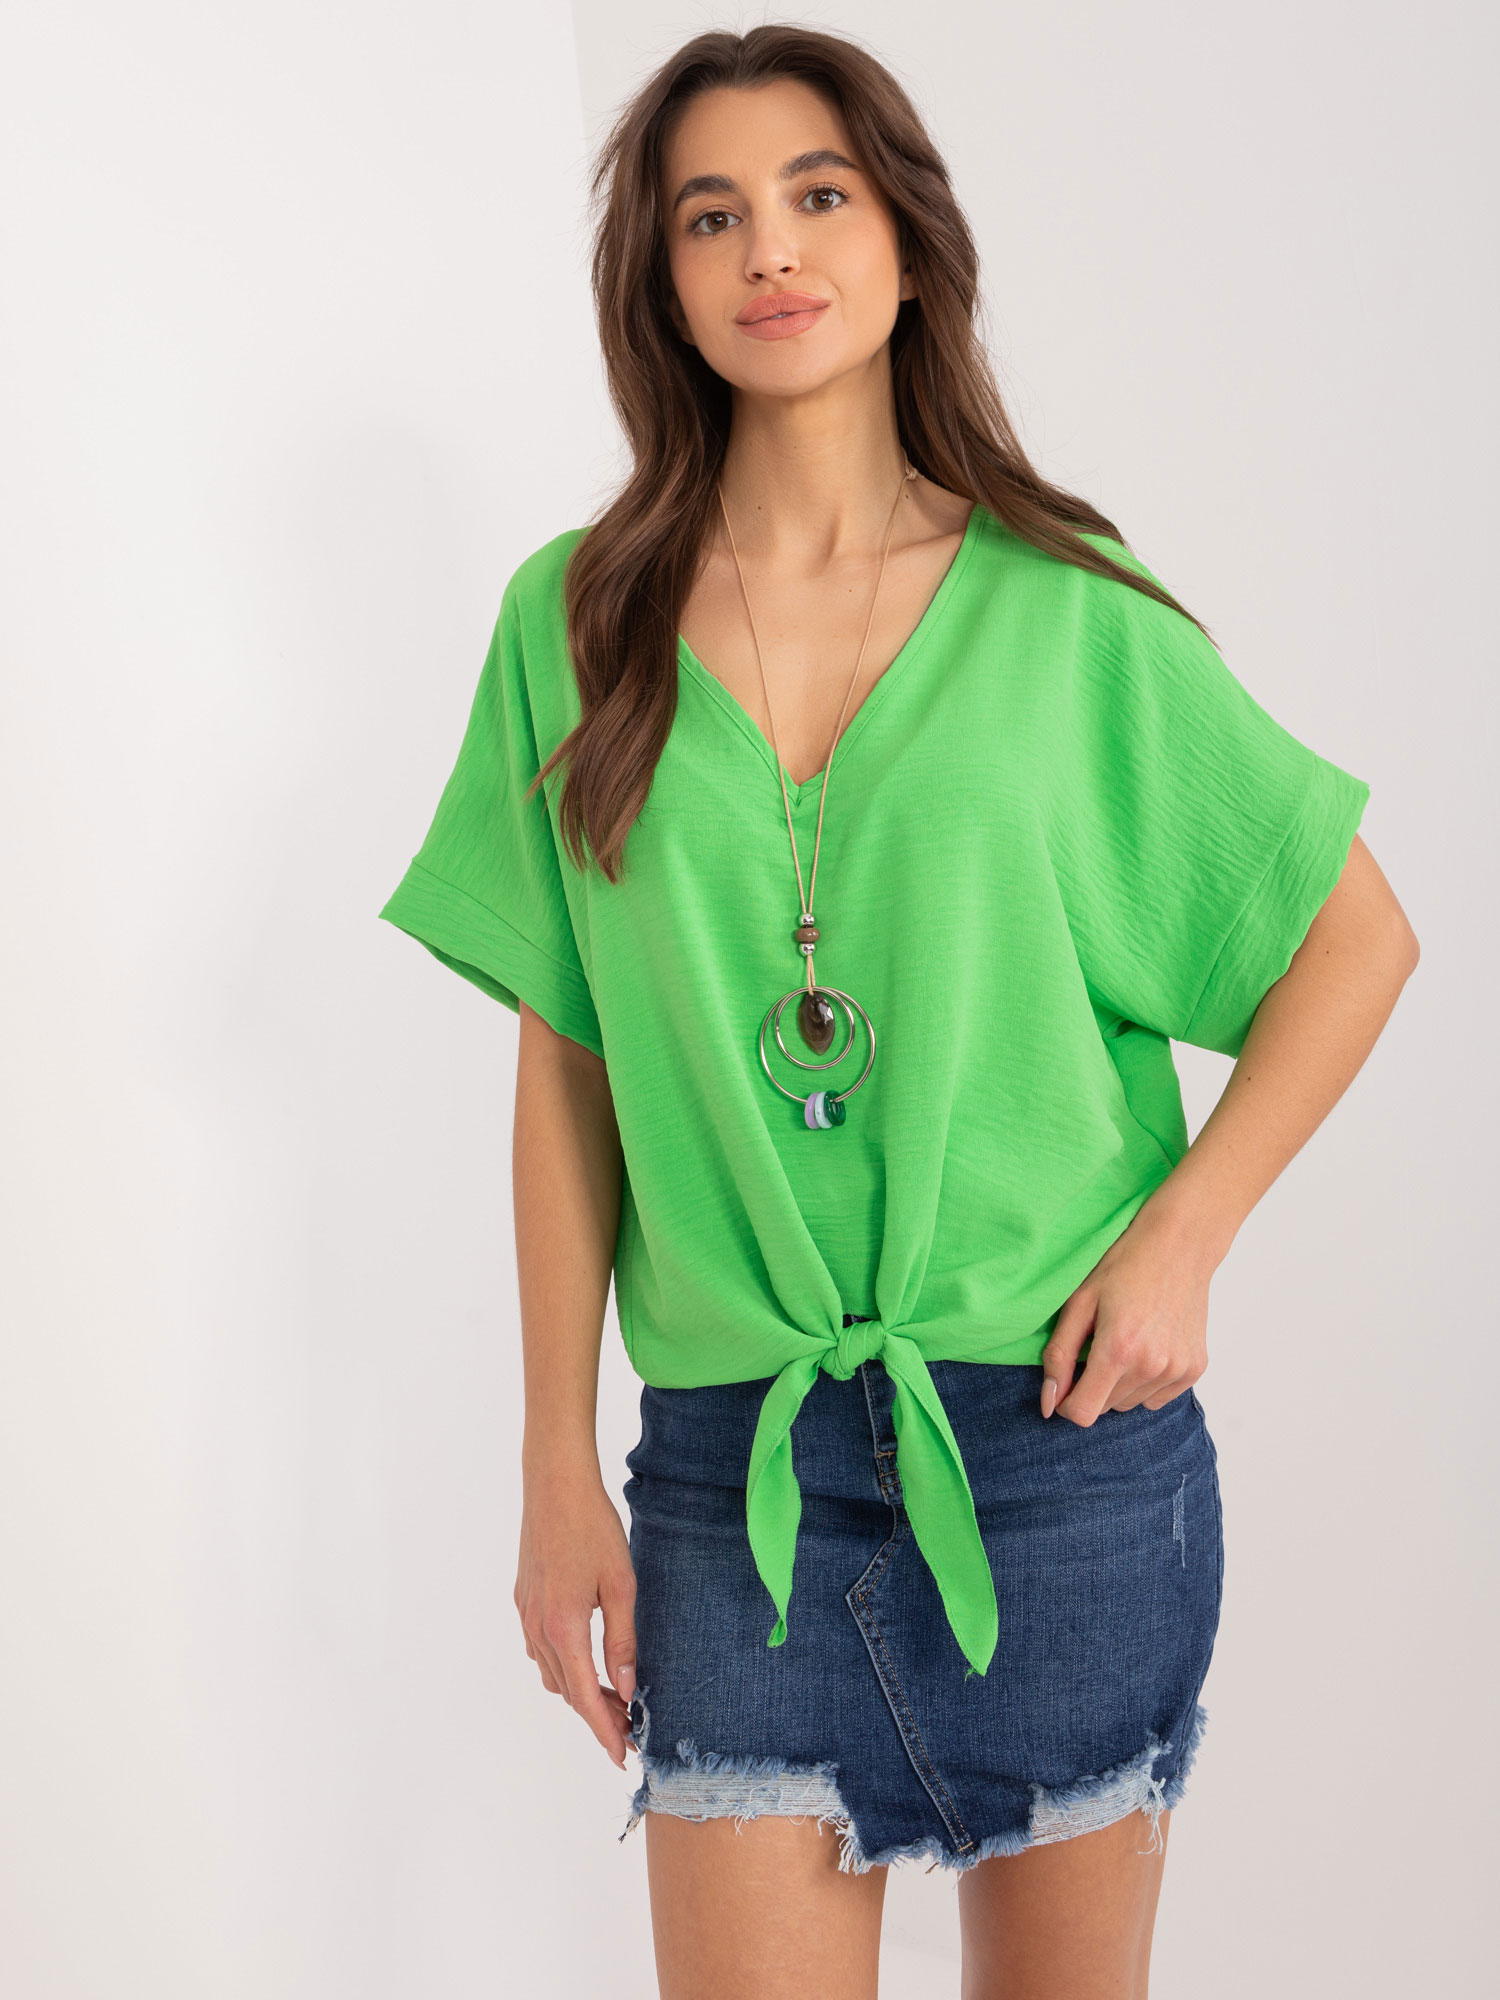 damska bluzka, elegantna damska bluzka, zelena bluzka